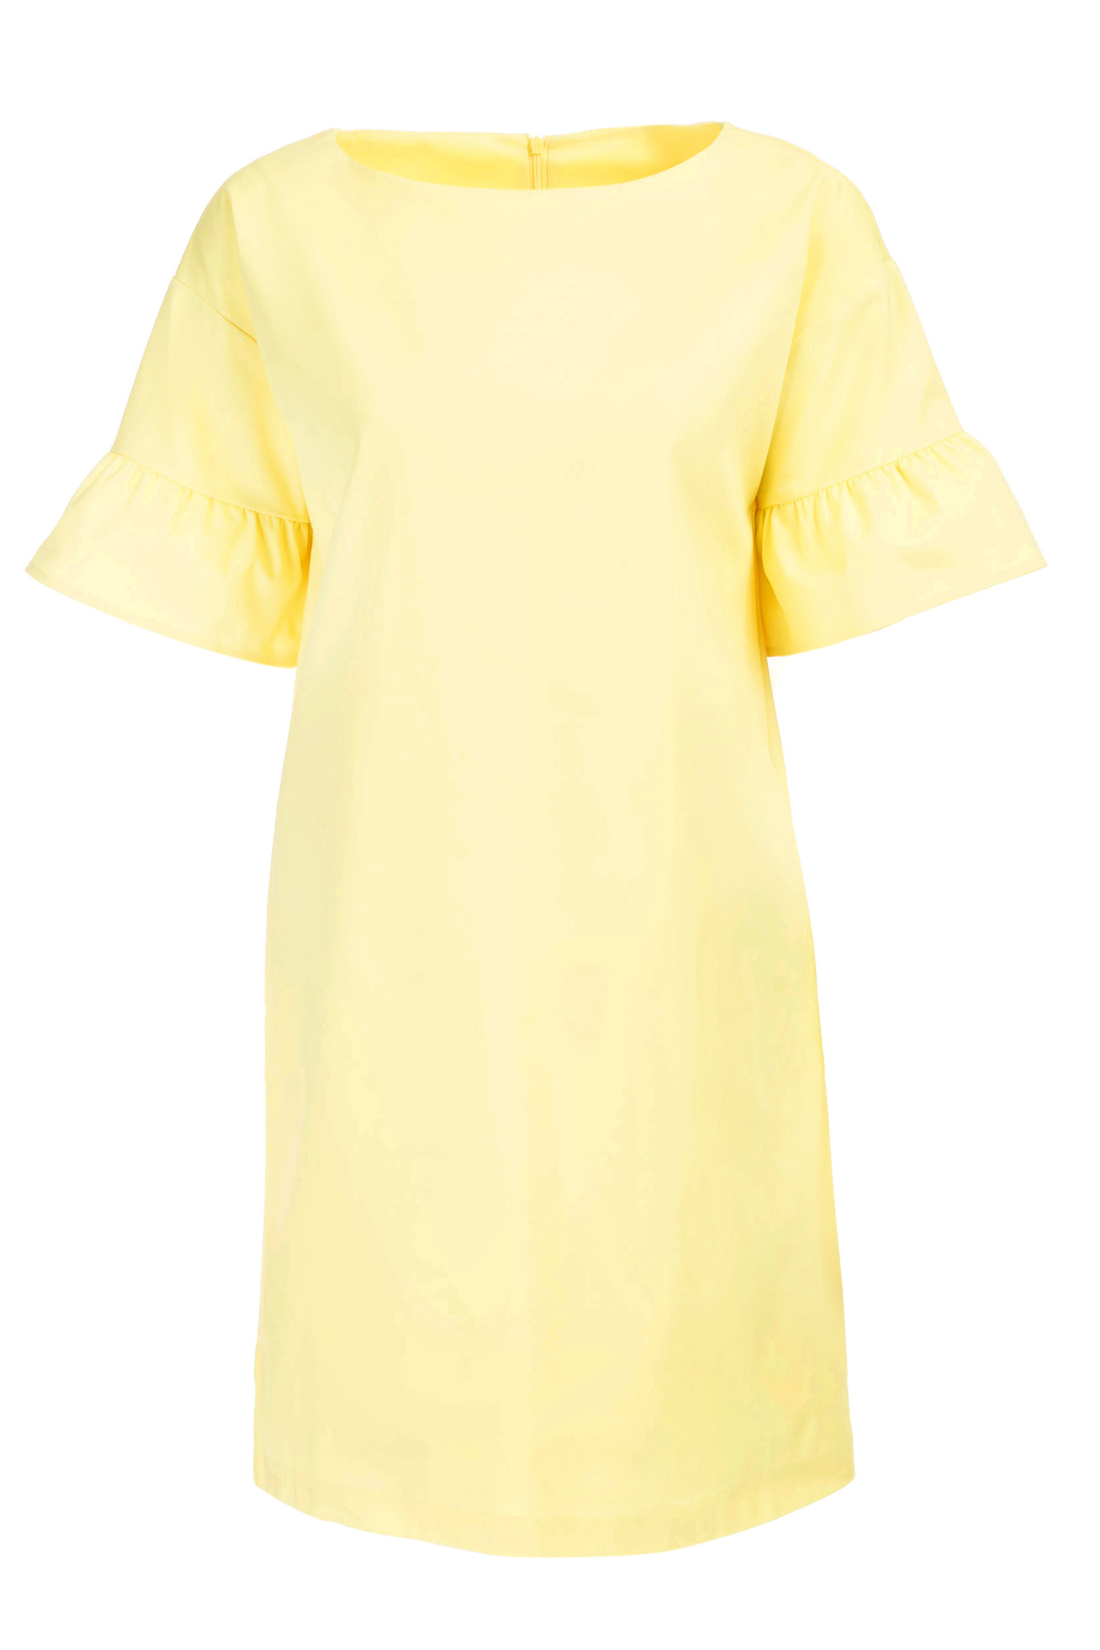 Платье с рукавами-воланами (арт. baon B457043), размер L, цвет желтый Платье с рукавами-воланами (арт. baon B457043) - фото 3